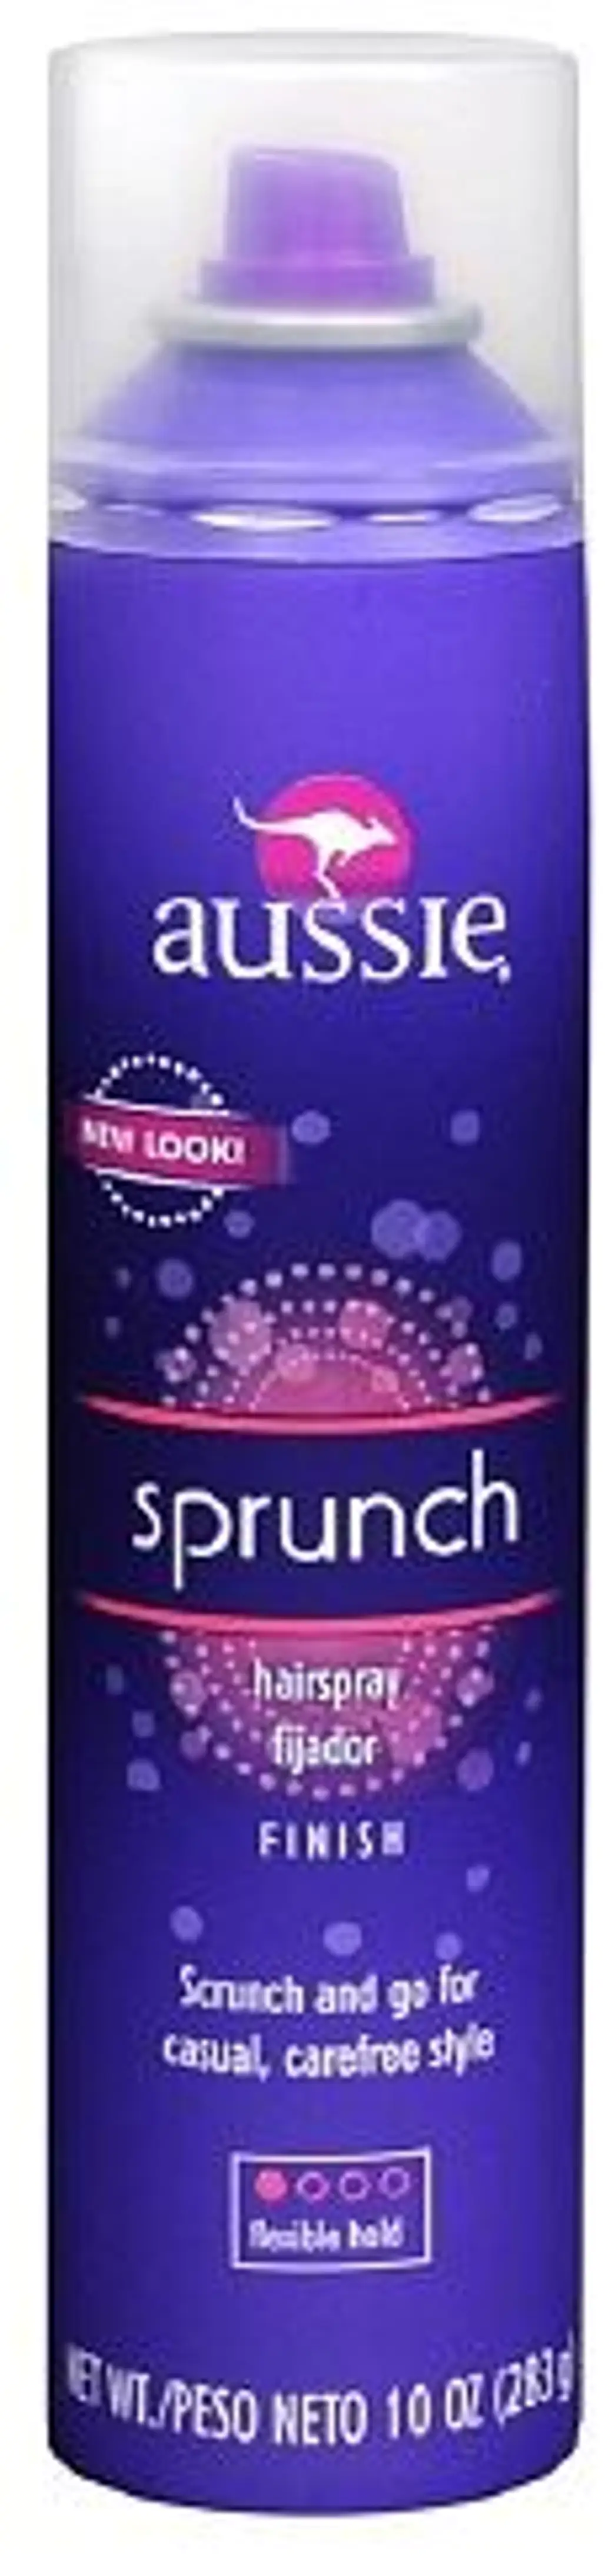 Aussie Sprunch Hair Spray Flexible Hold